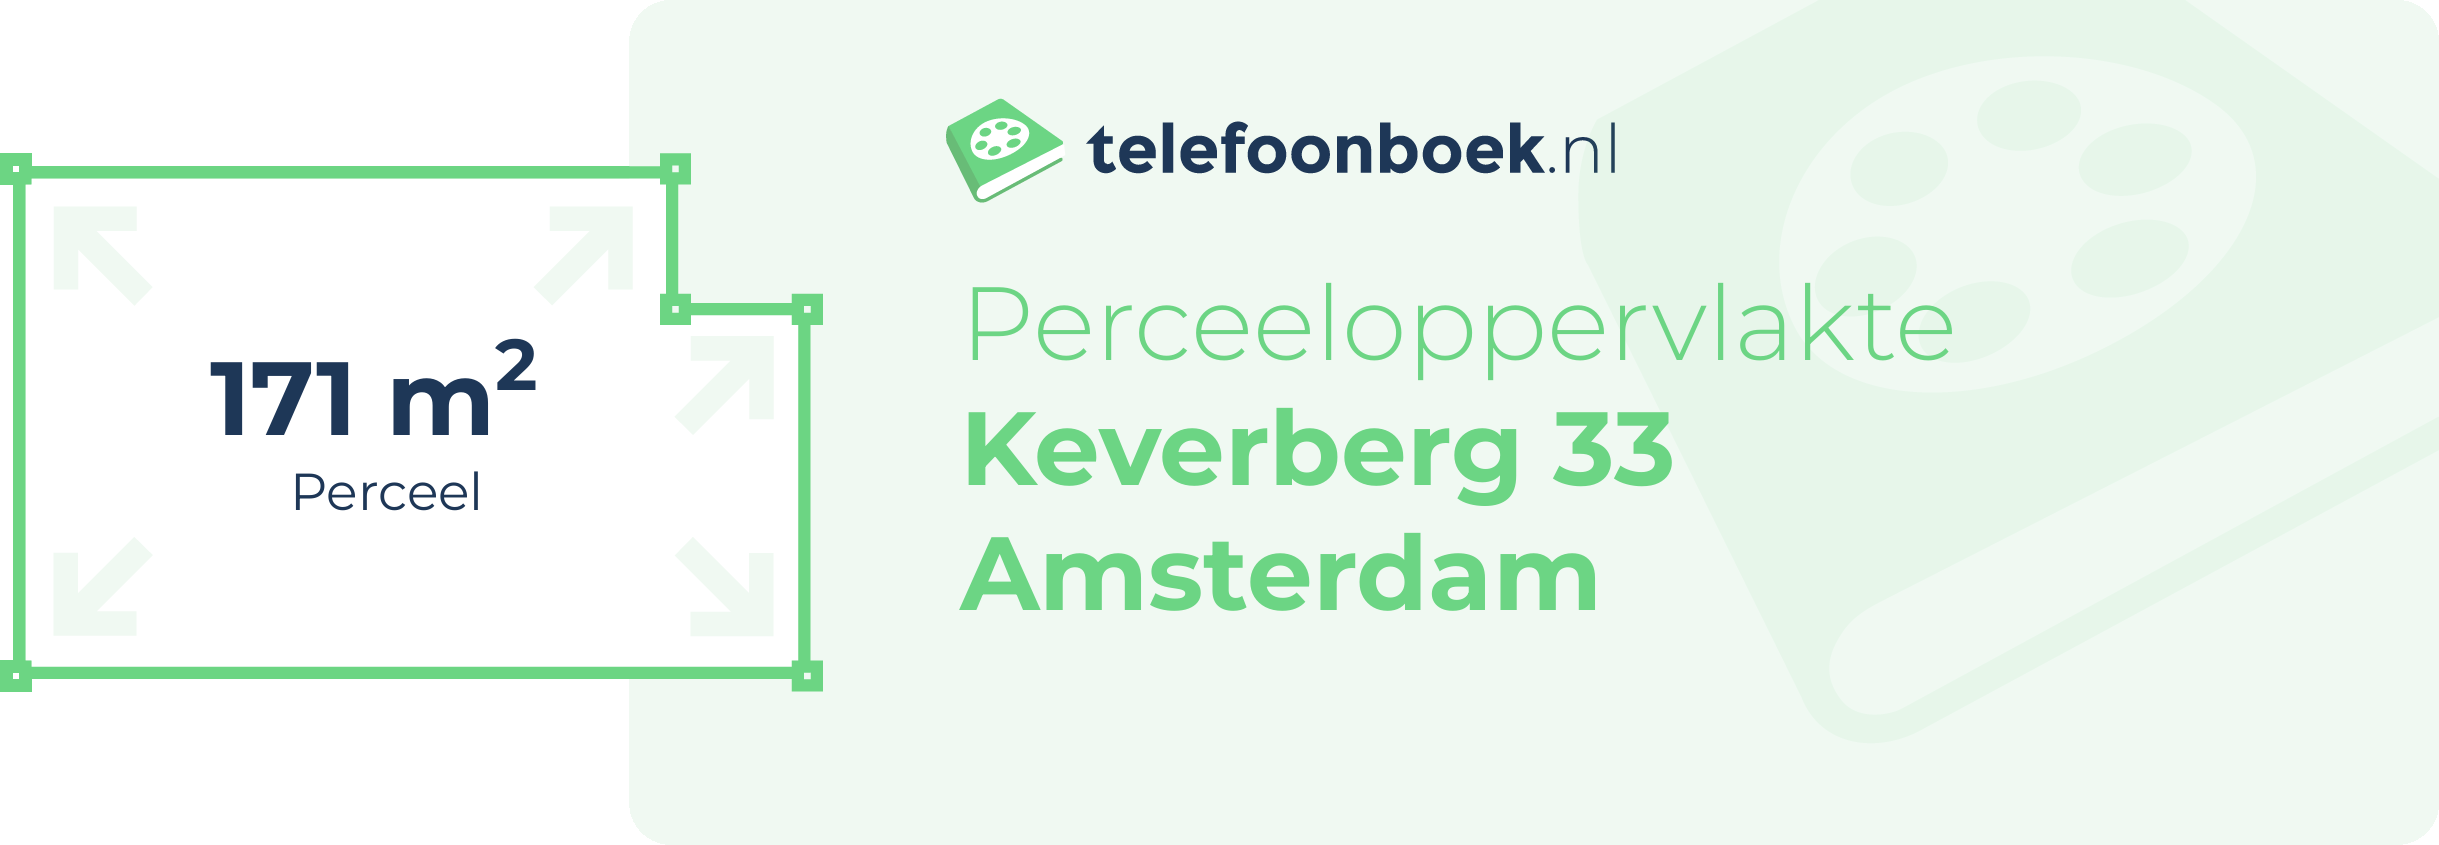 Perceeloppervlakte Keverberg 33 Amsterdam